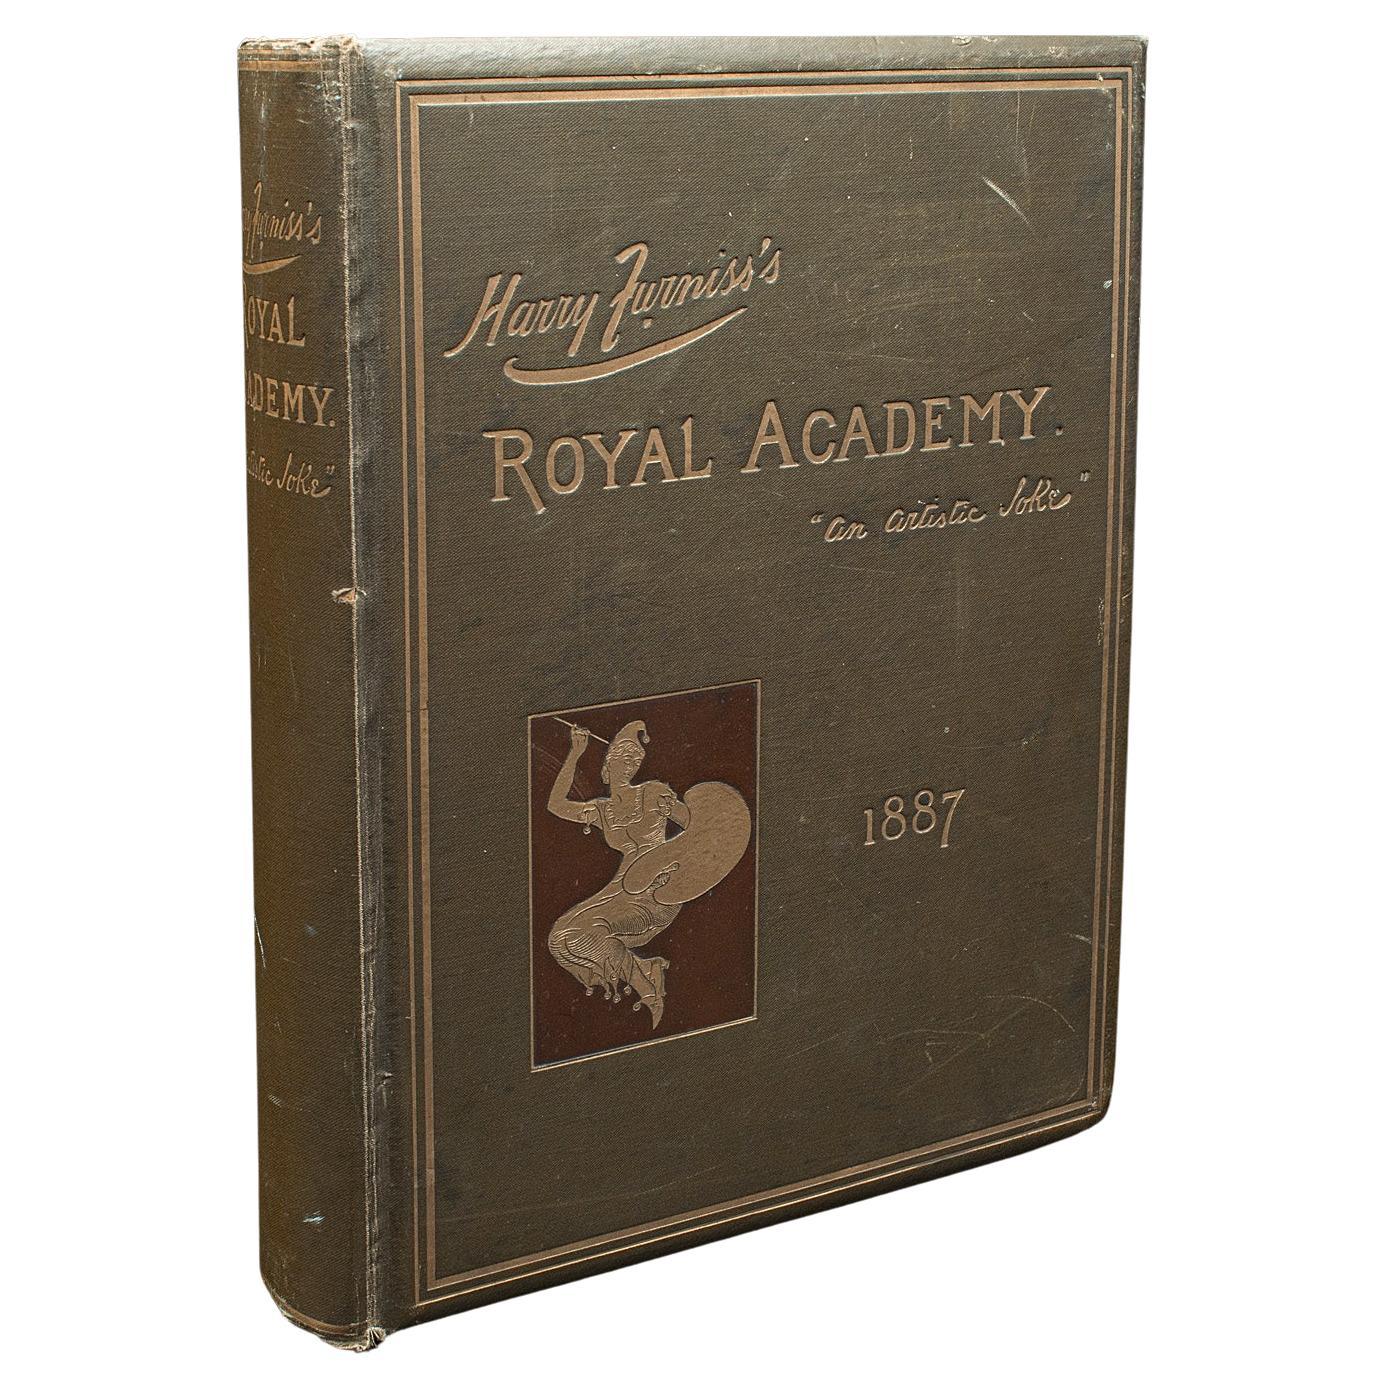 Livre d'art ancien de la Royal Academy, Harry Furniss, anglais, exposition victorienne